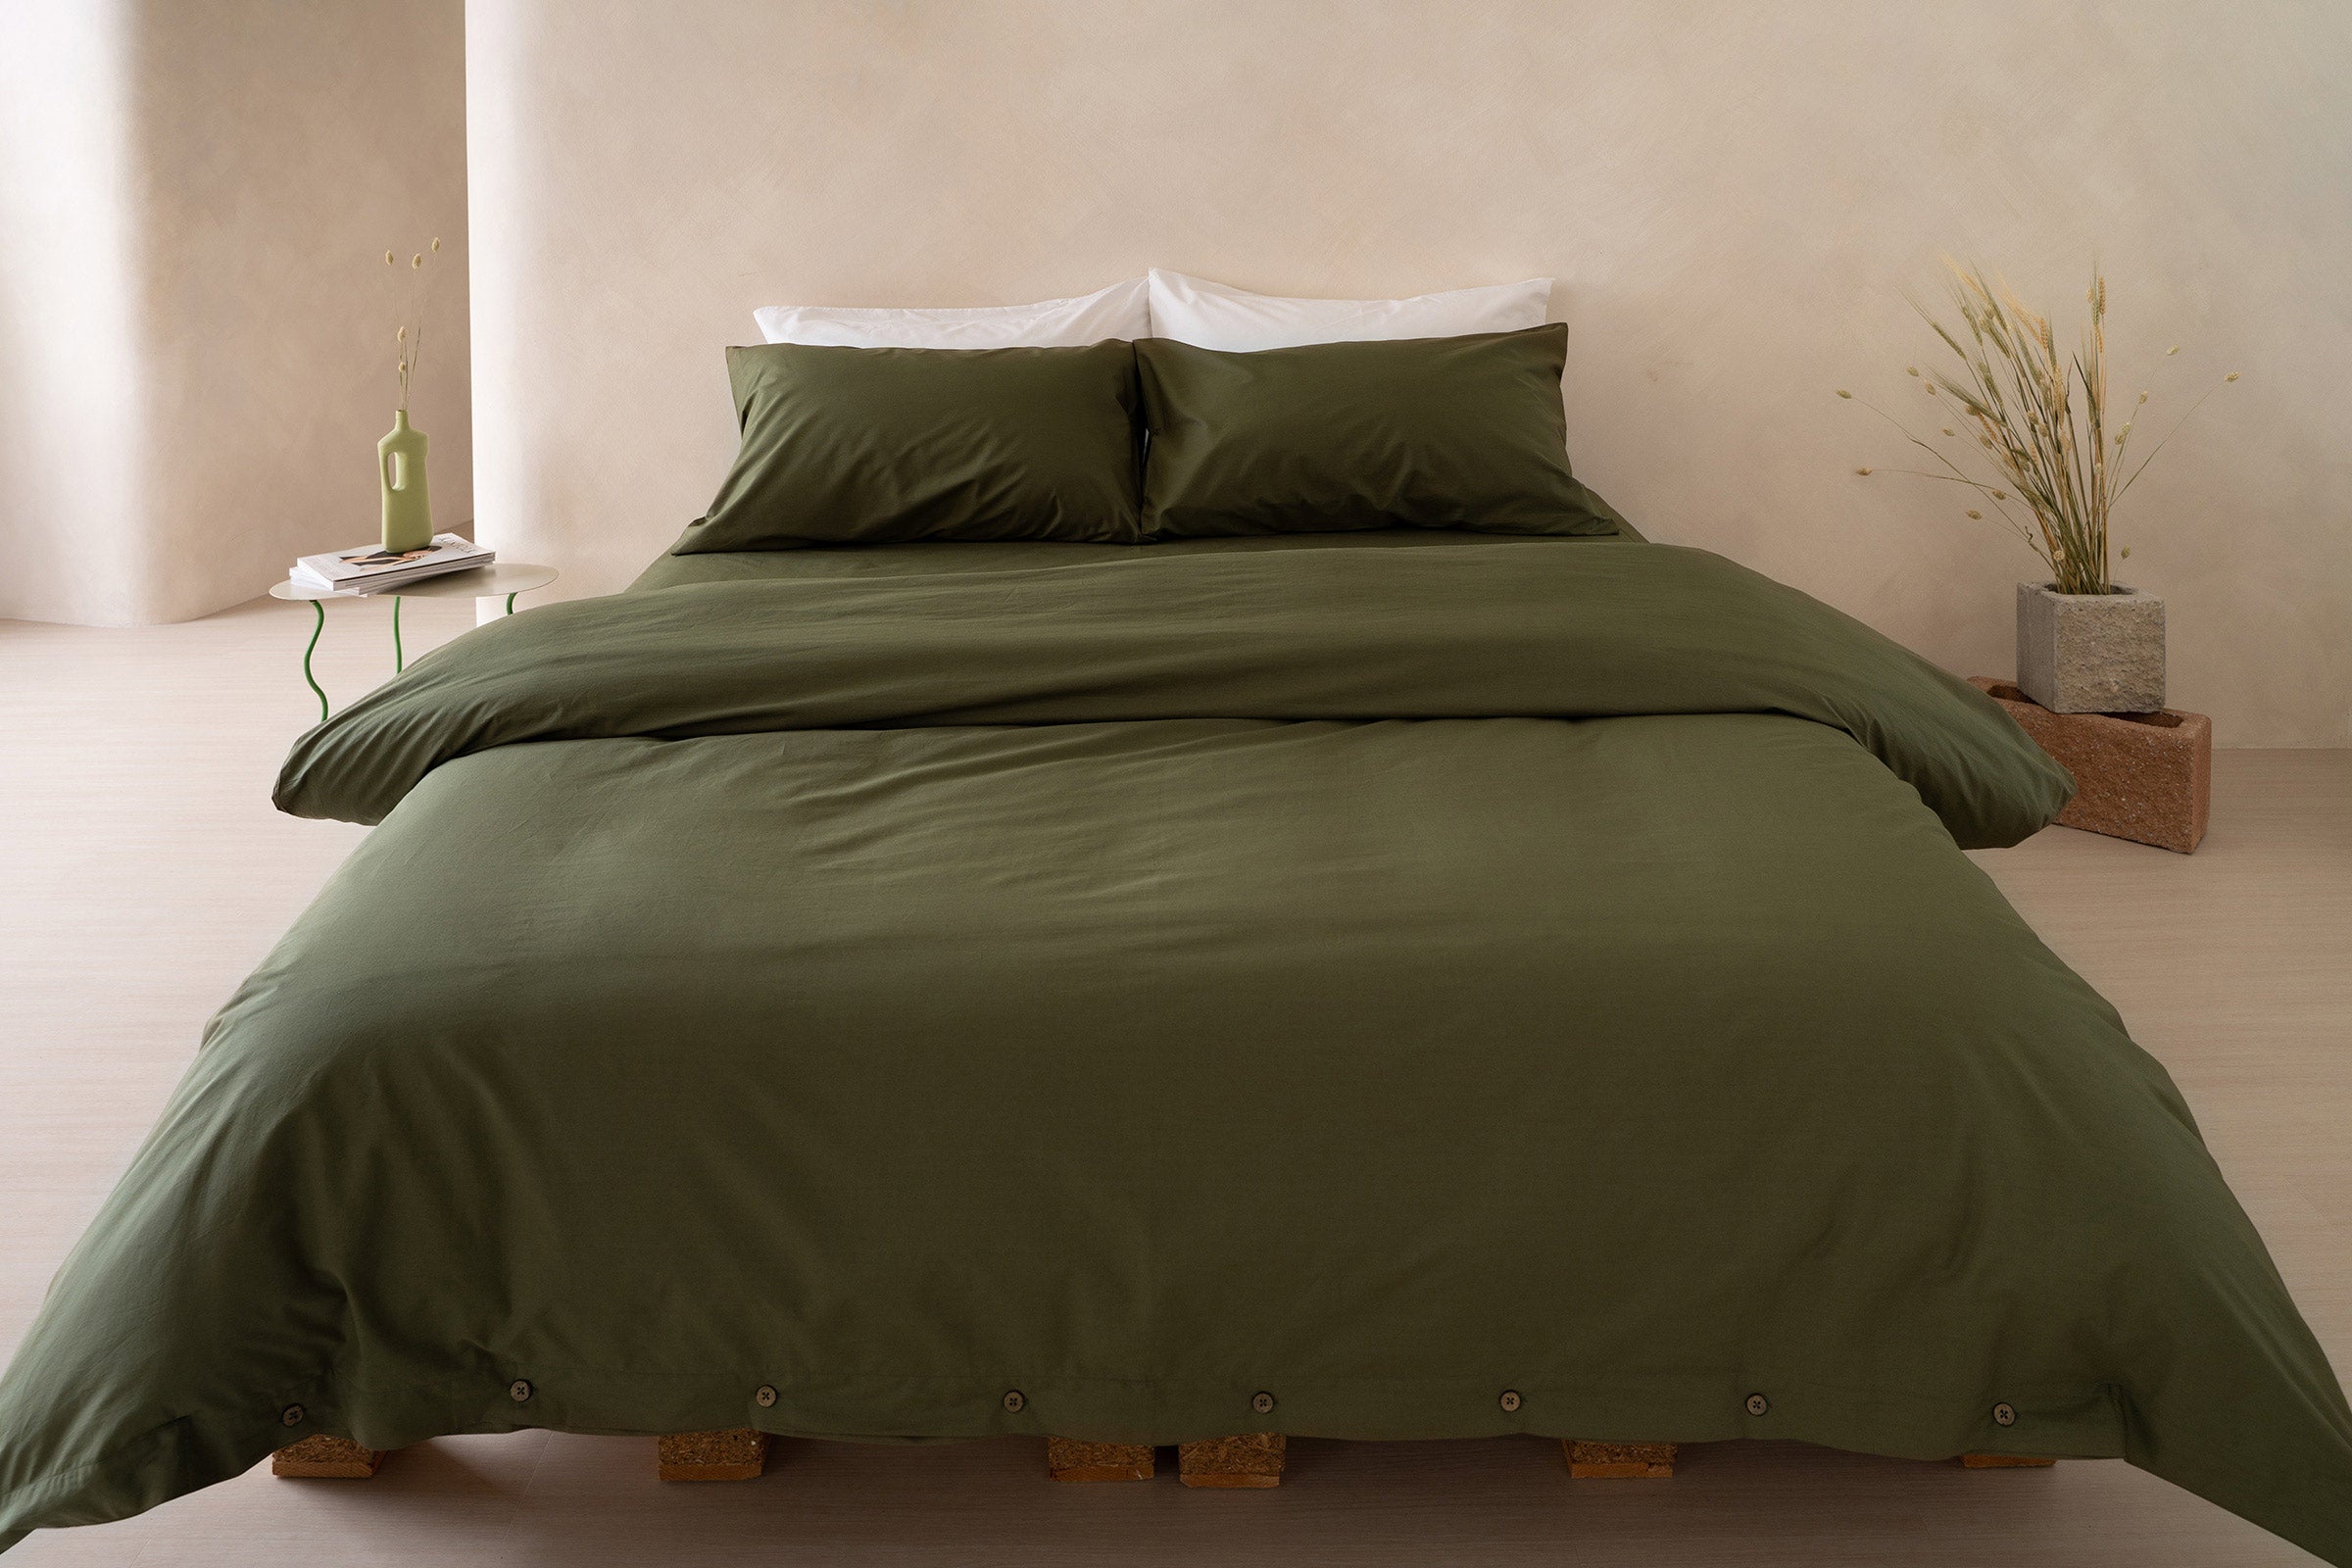 crisp-olive-duvet-cover-fitted-sheet-pillowcase-pair-white-pillowcase-pair-by-sojao.jpg